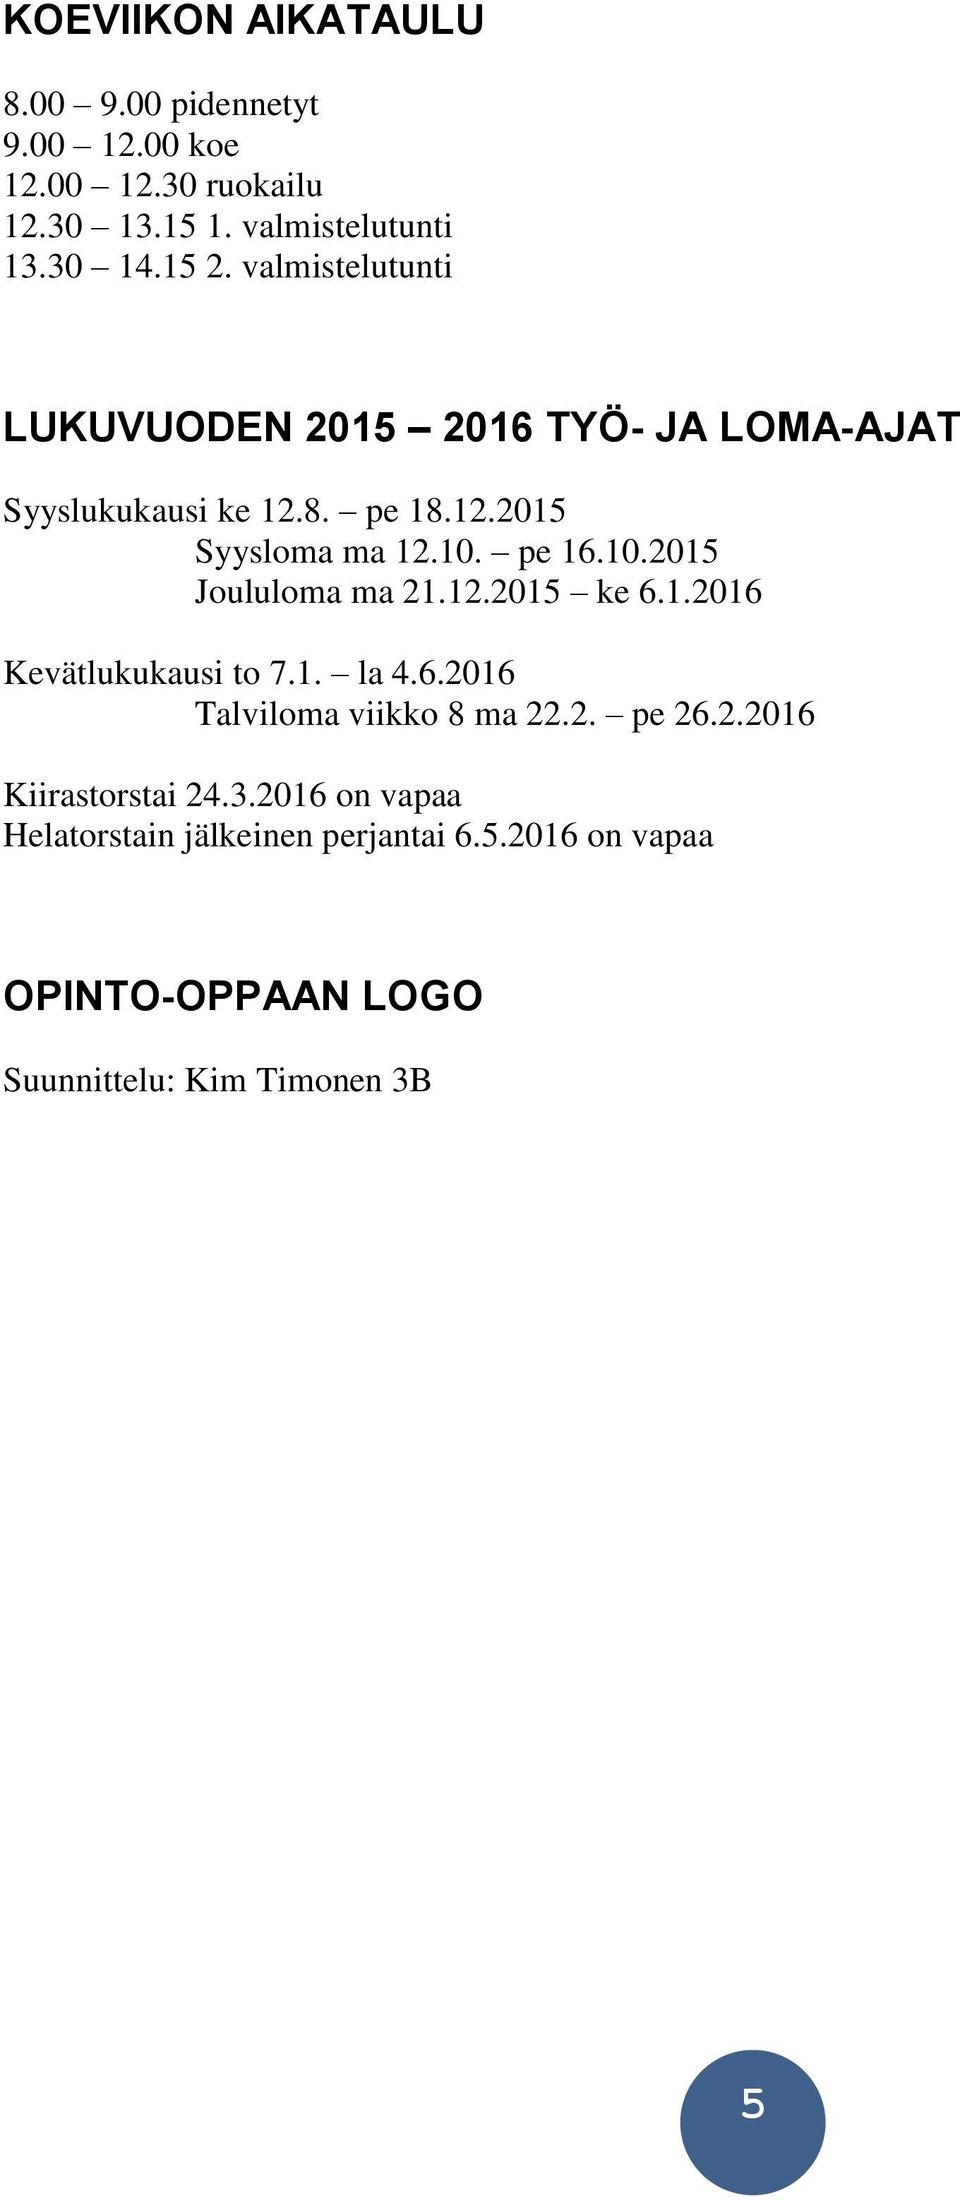 pe 16.10.2015 Joululoma ma 21.12.2015 ke 6.1.2016 Kevätlukukausi to 7.1. la 4.6.2016 Talviloma viikko 8 ma 22.2. pe 26.2.2016 Kiirastorstai 24.